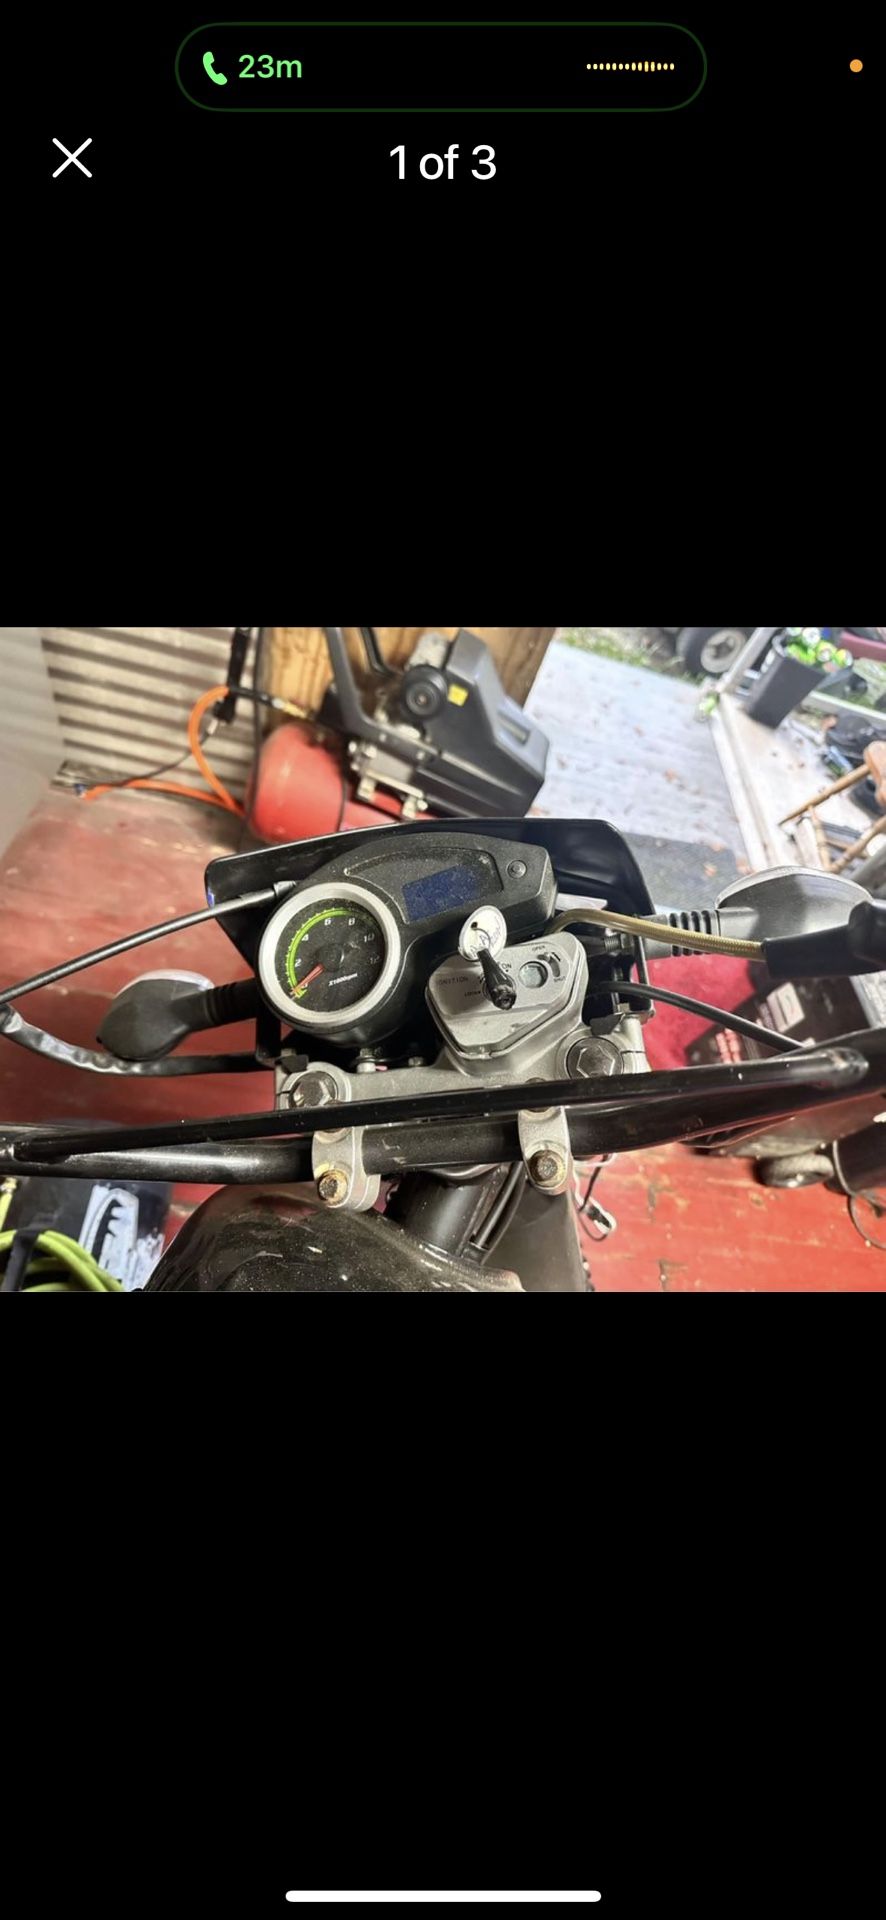 2021 Dirt bike 250cc